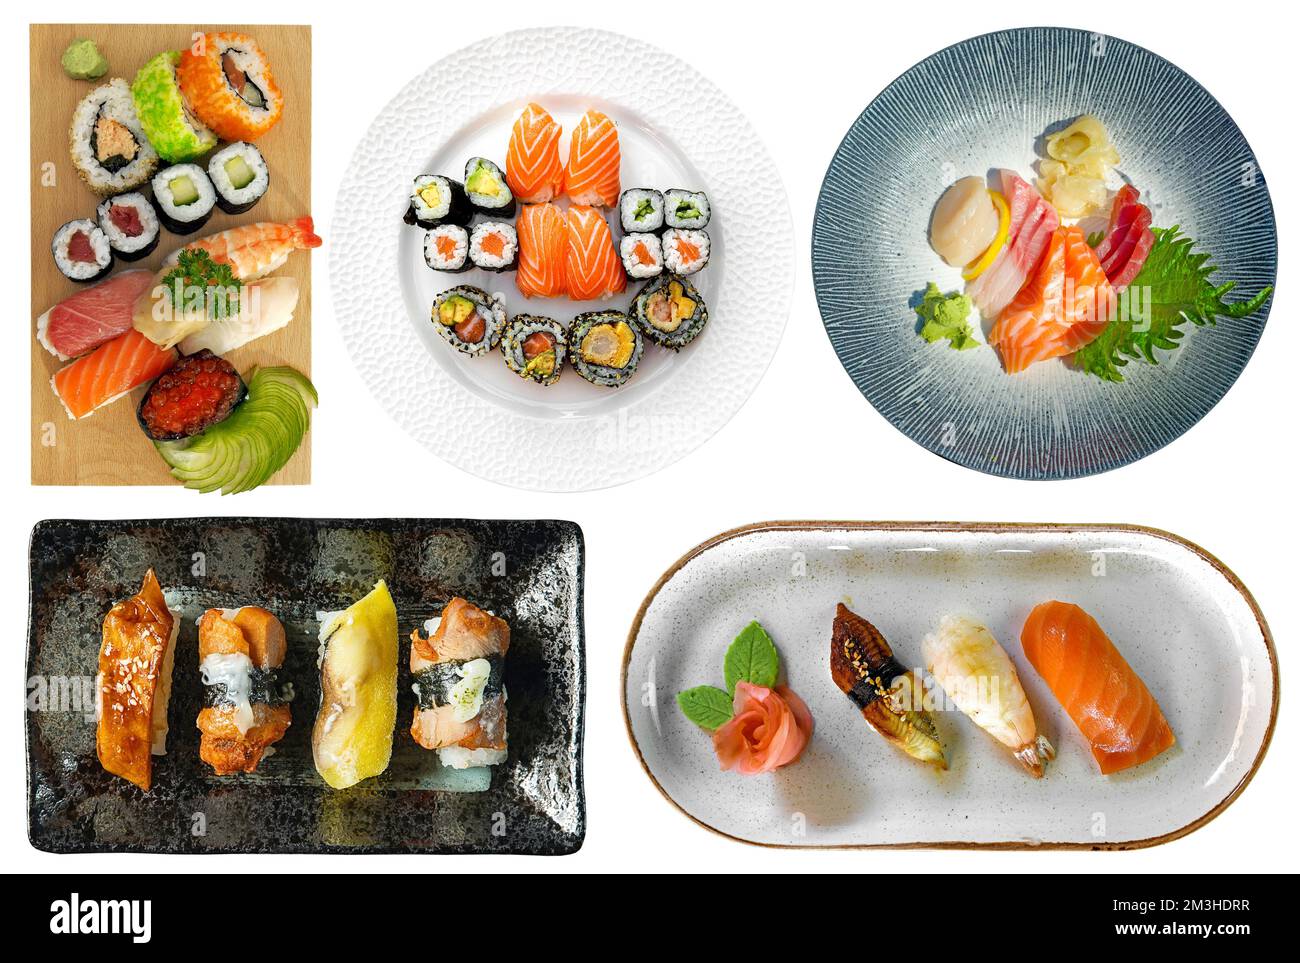 Vari tipi di sushi e sashimi serviti pronti per mangiare, isolati su sfondo bianco. Cucina giapponese ritagliata, vista dall'alto Foto Stock